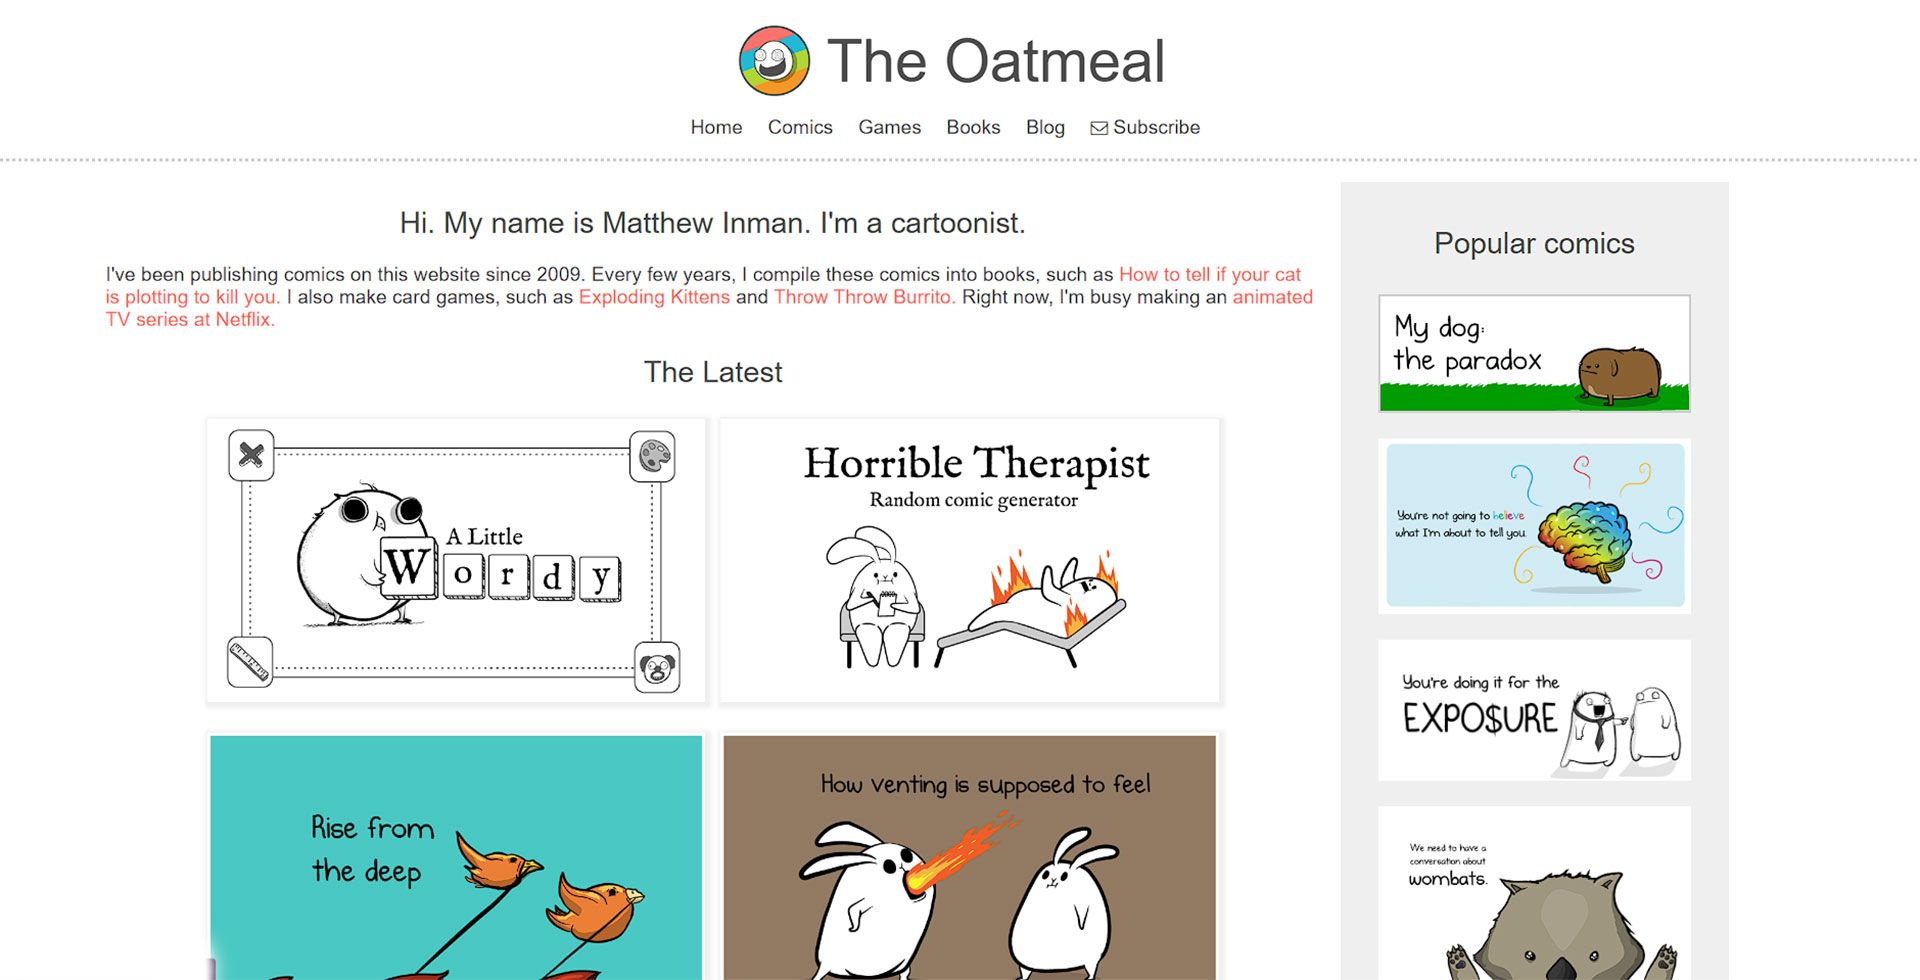 صفحه اول سایت The Oatmeal که تصاویر کارتونی مختلف در آن وجود دارد